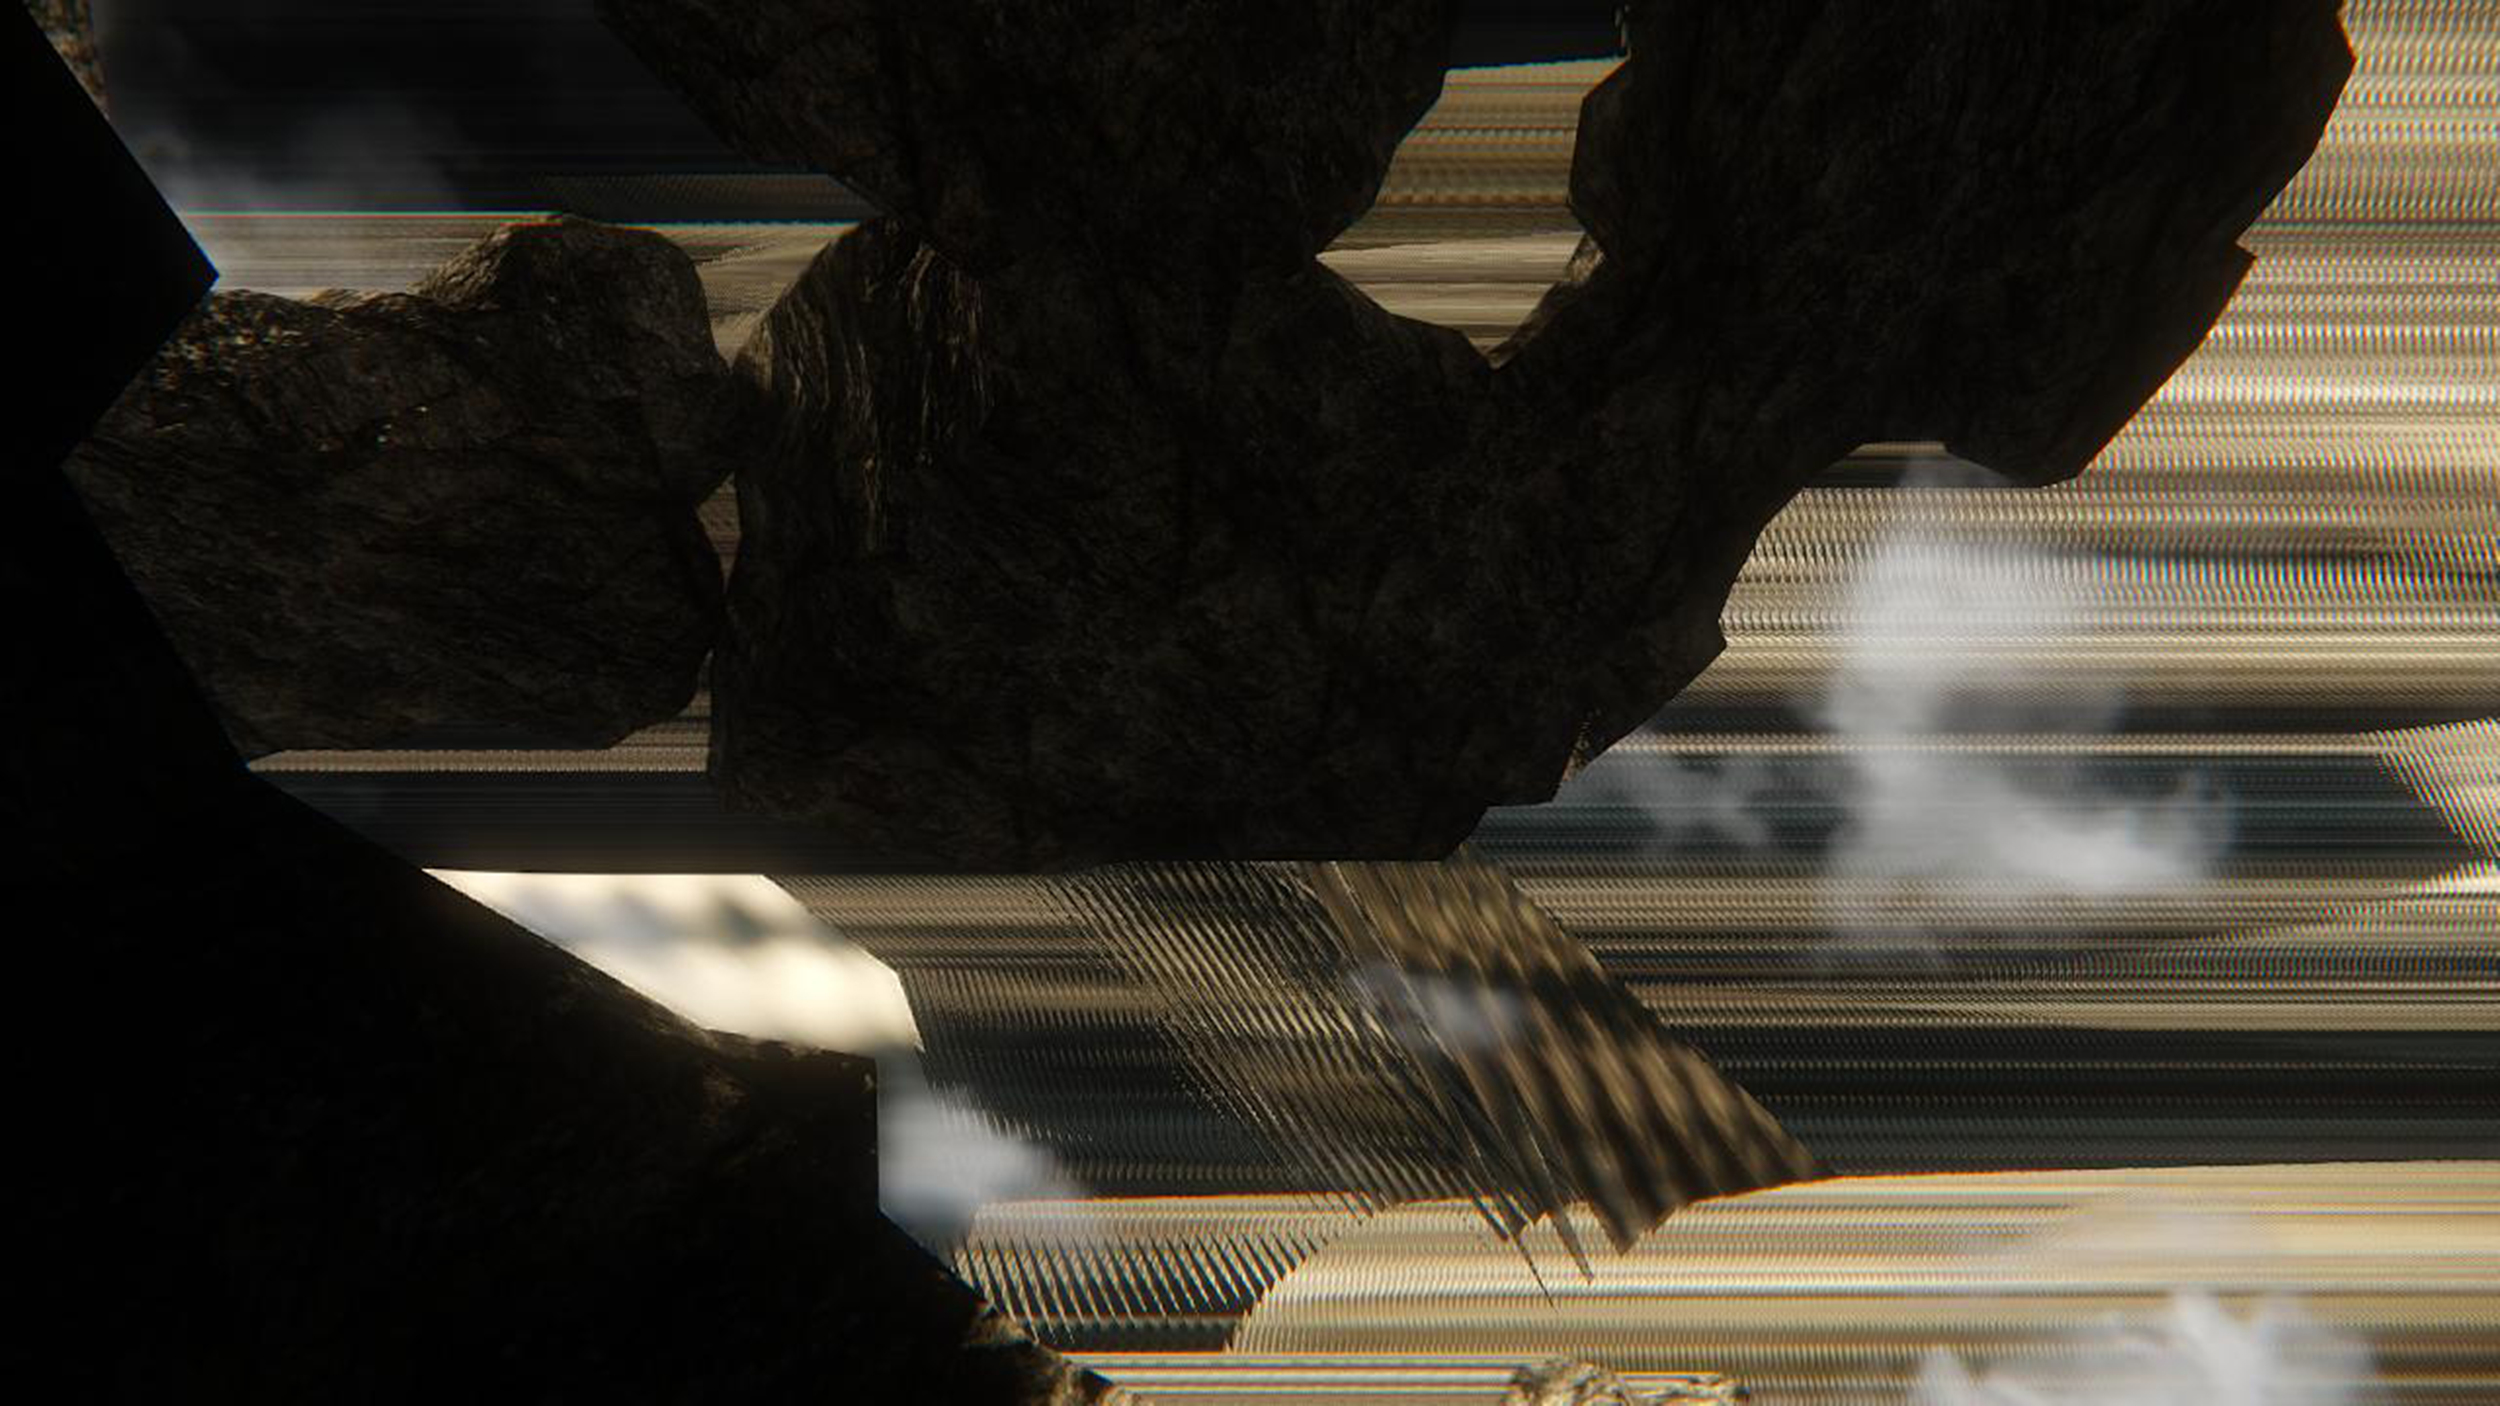   &nbsp;Marco Mendeni, r_lightTweakSunlight,&nbsp; 2014, still frame from video installation  